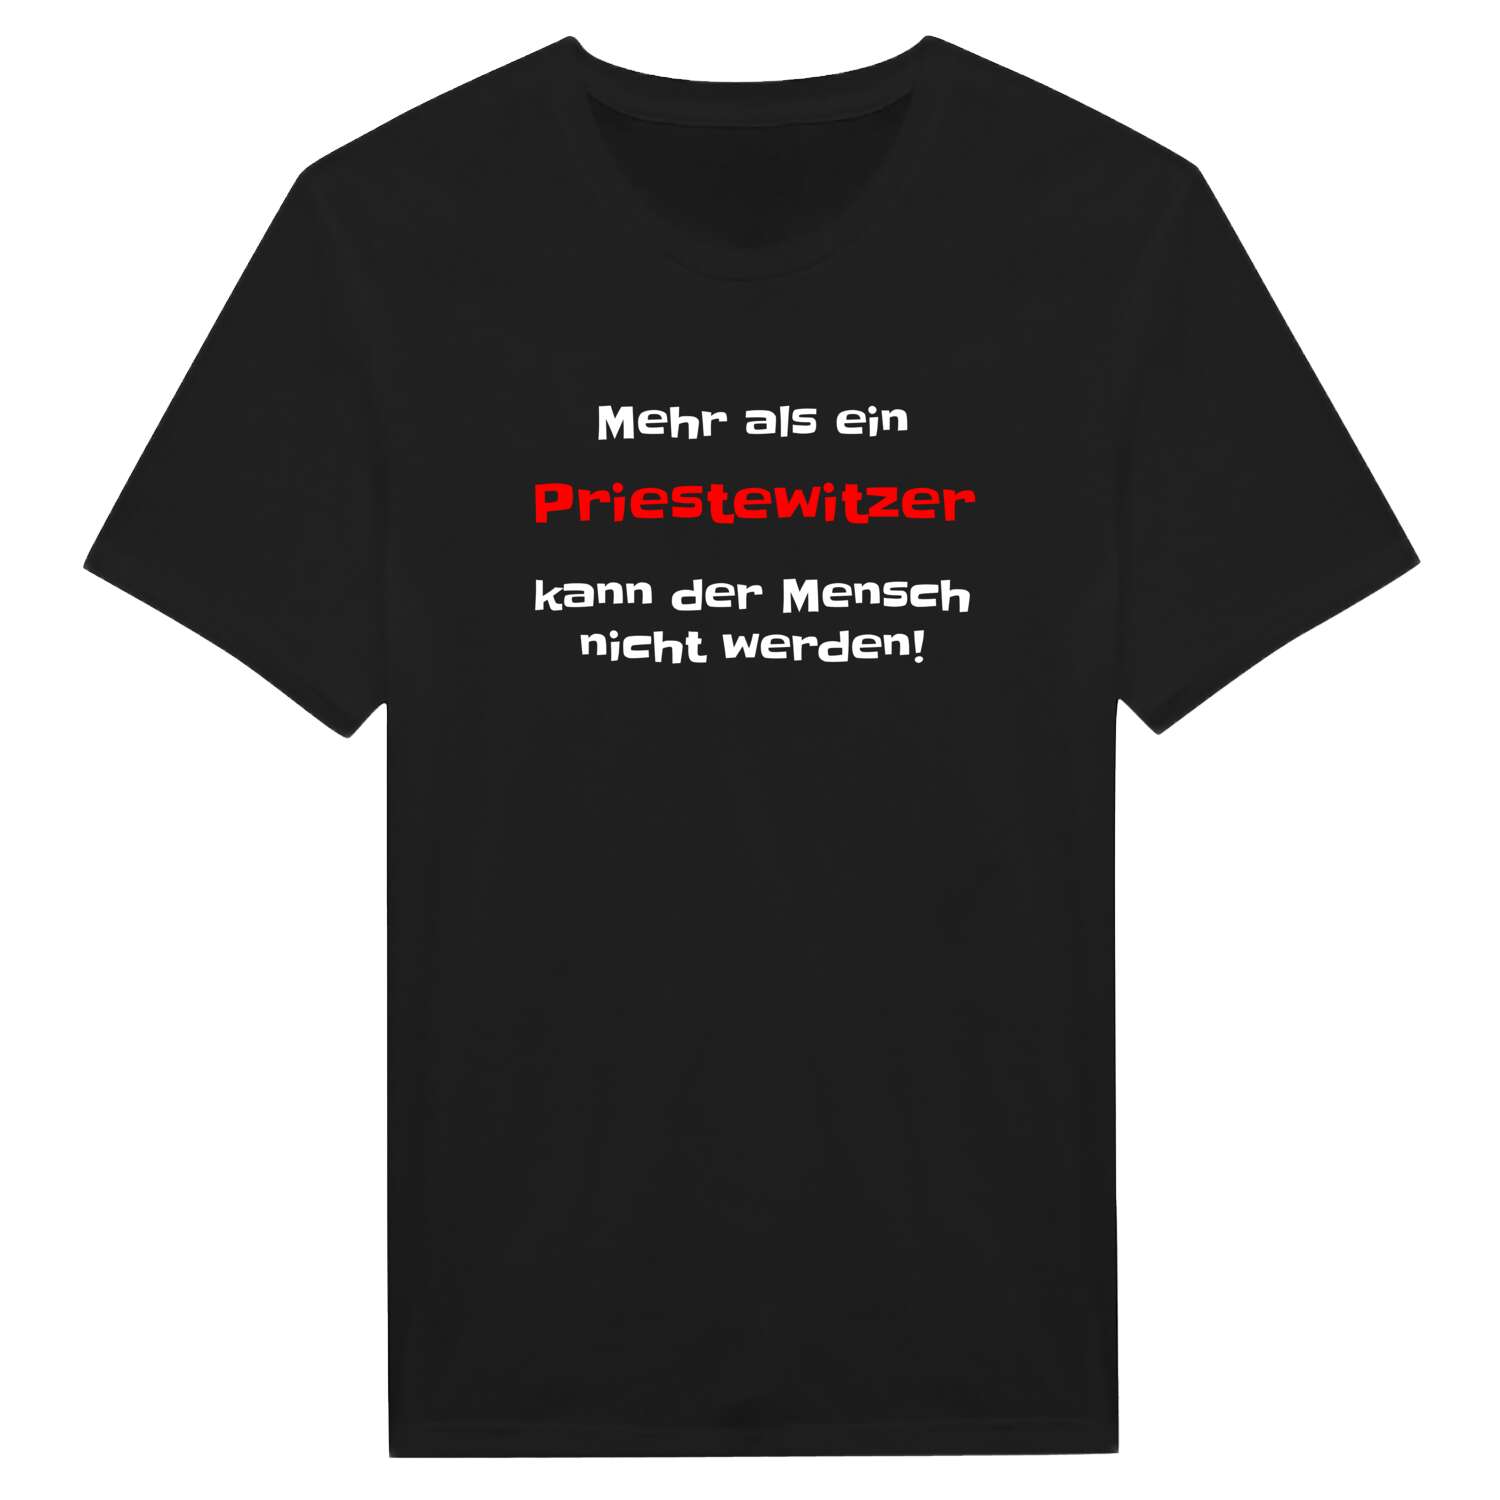 Priestewitz T-Shirt »Mehr als ein«